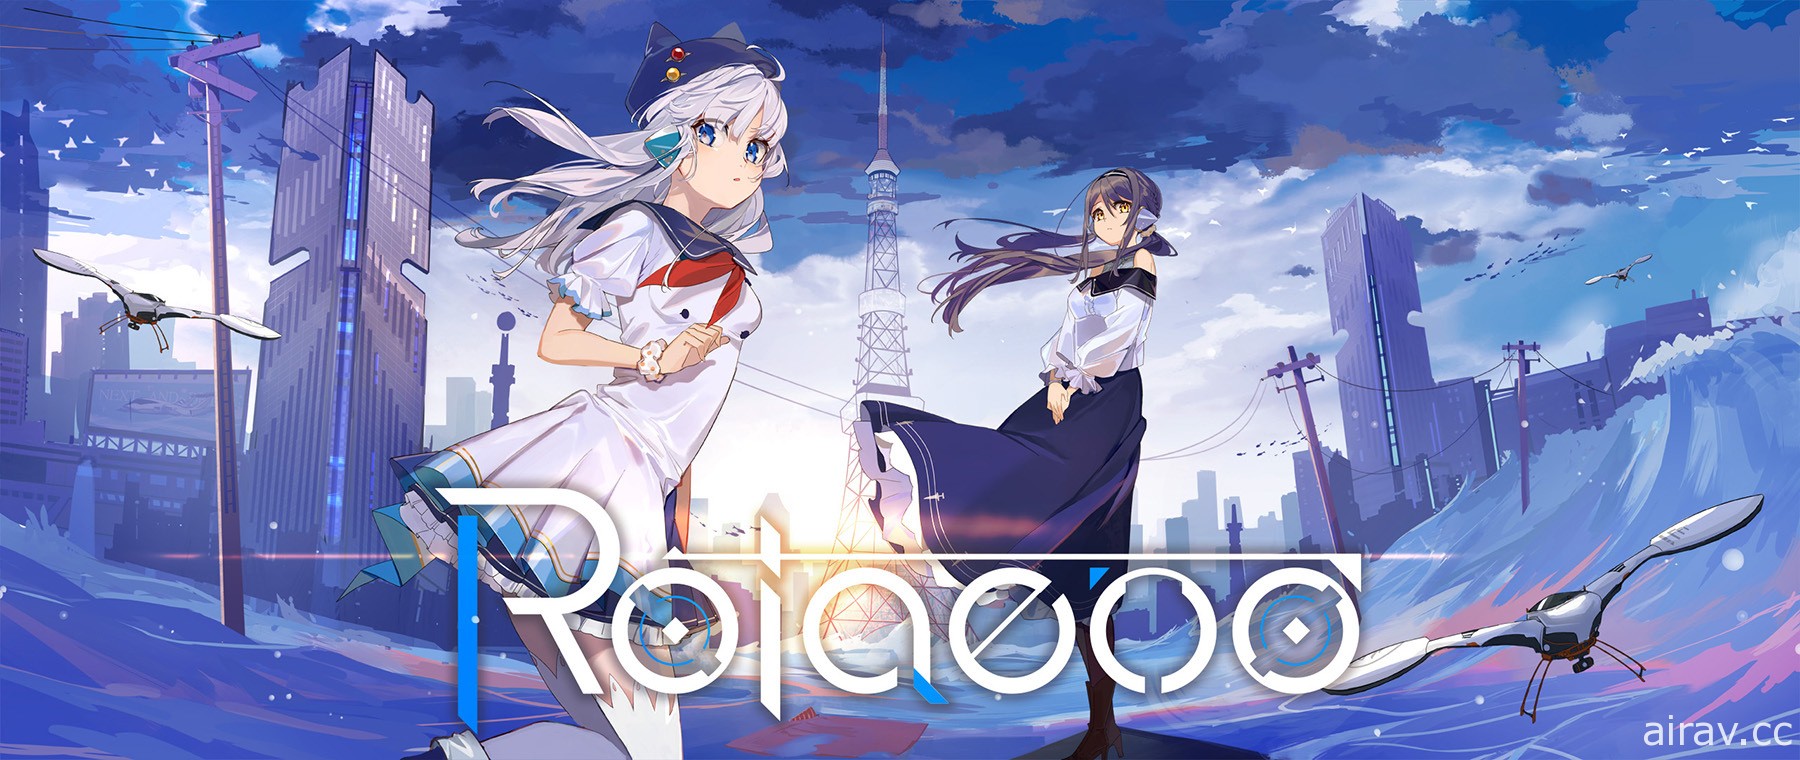 旋轉音樂遊戲《旋轉音律 Rotaeno》宣布將於 2022 年推出 支援日文、中文等多種語言